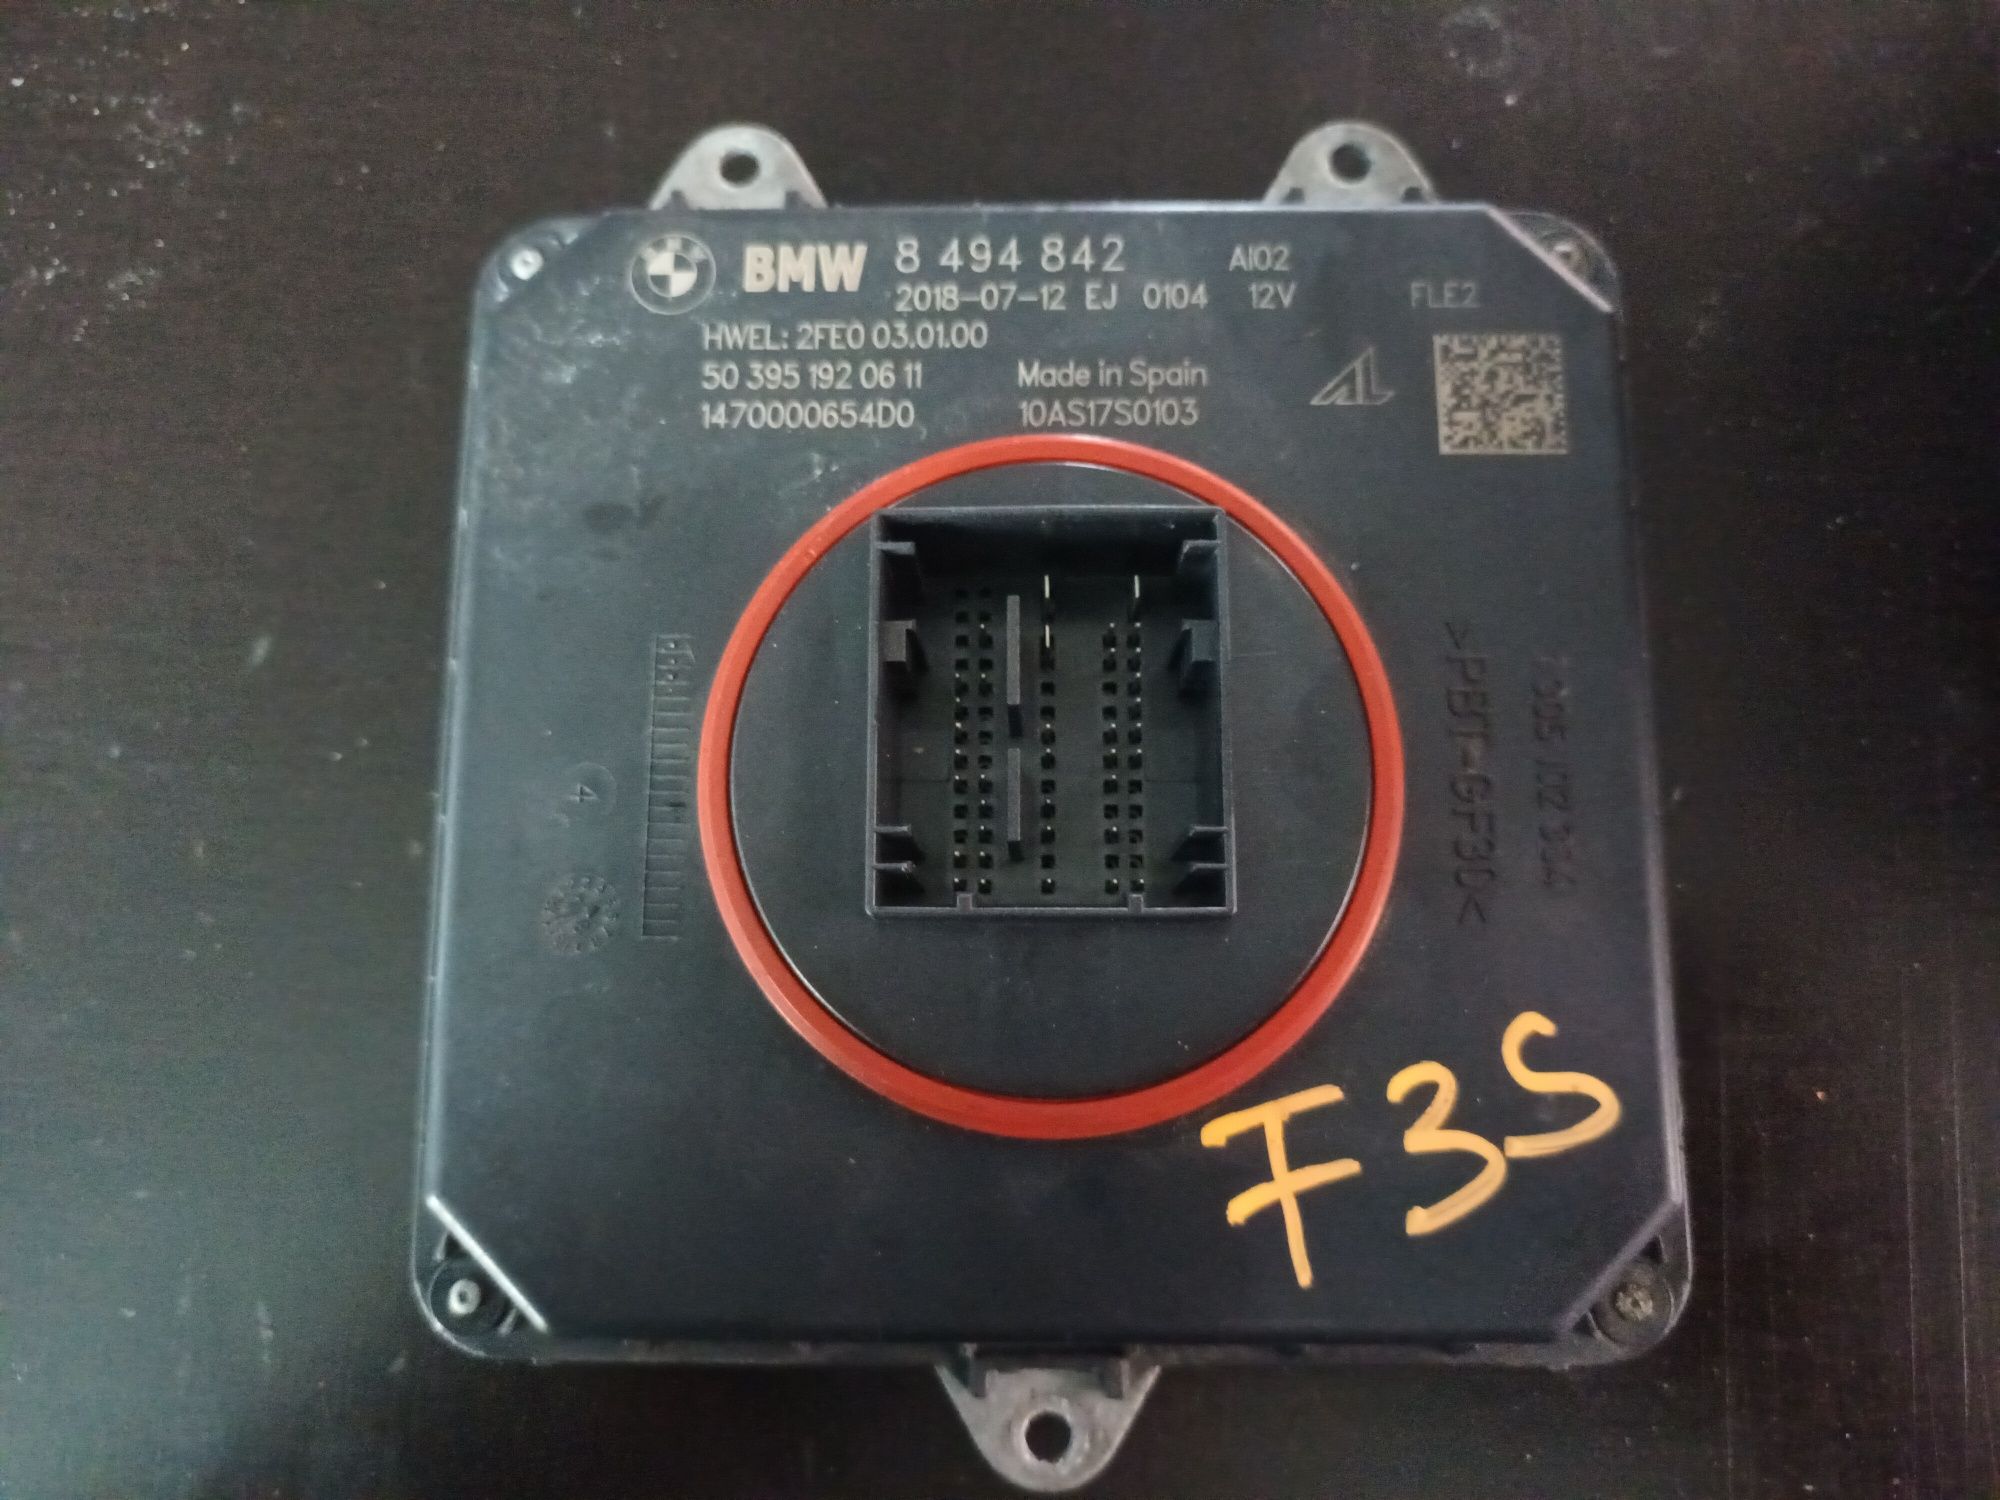 Balast/modul far led bmw F30 F31 F32 F20 F15 F16, 8494842, full led